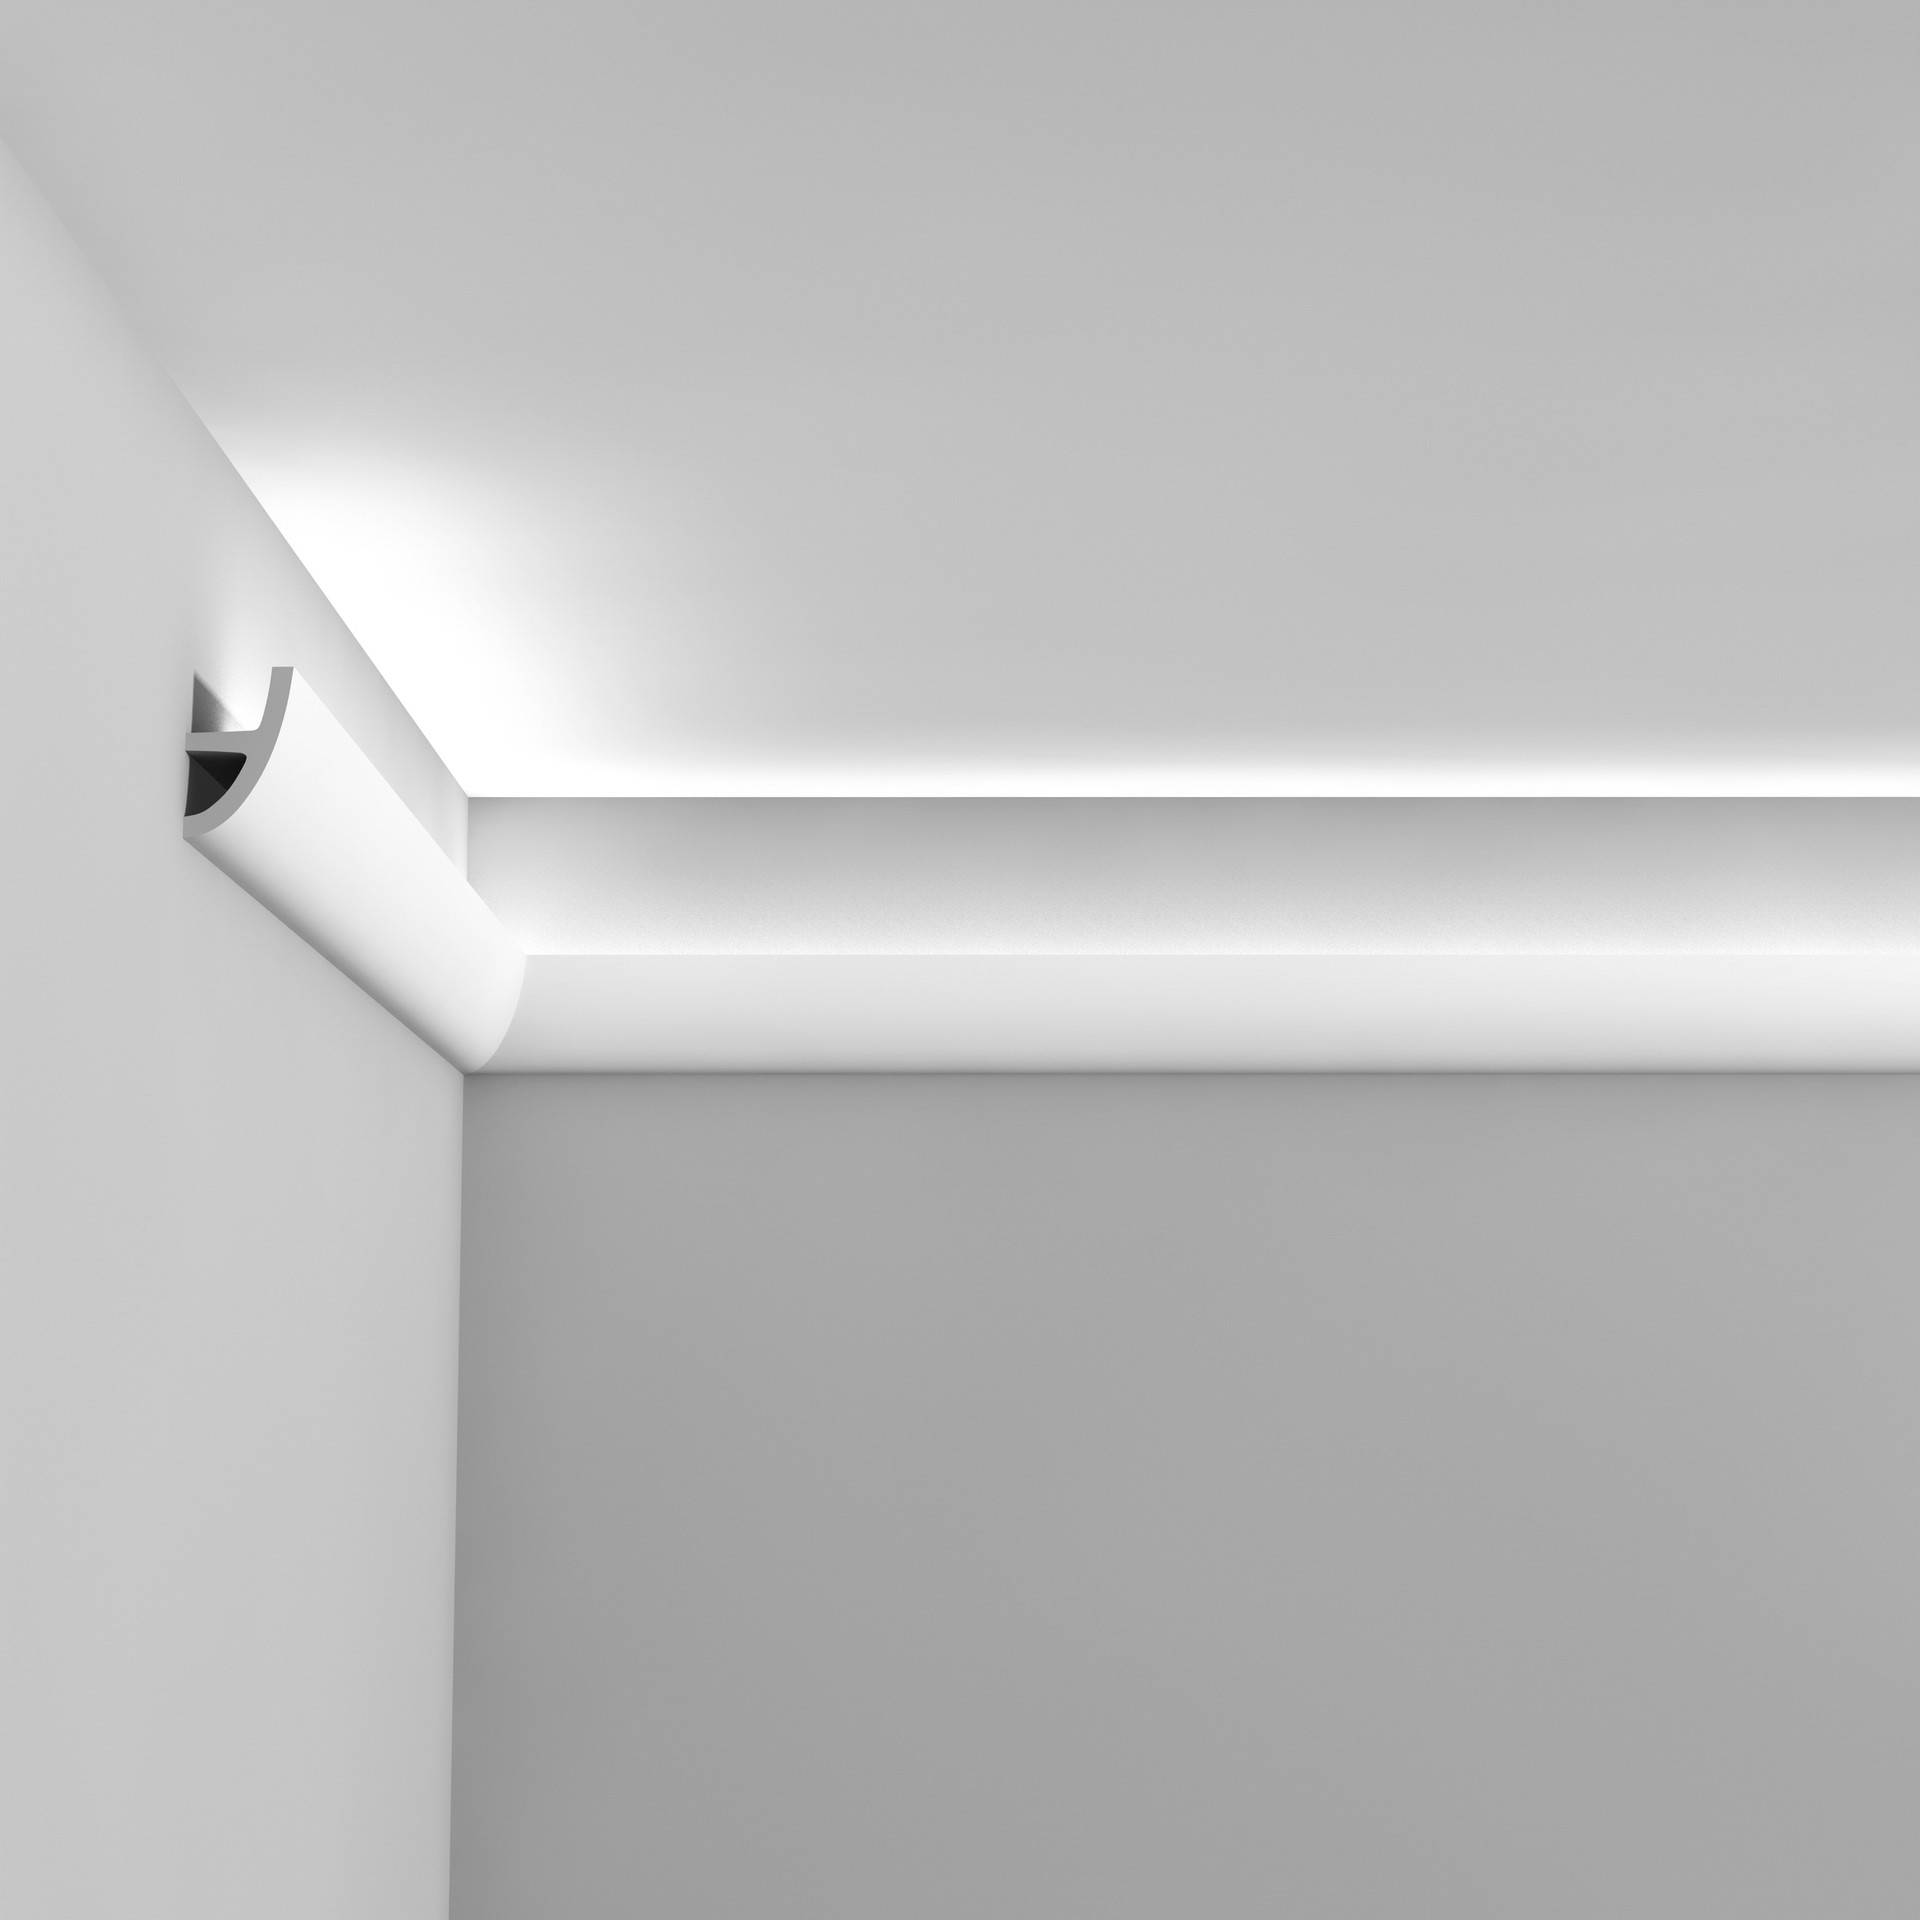 Карнизы к натяжным потолкам с подсветкой - варианты и типы